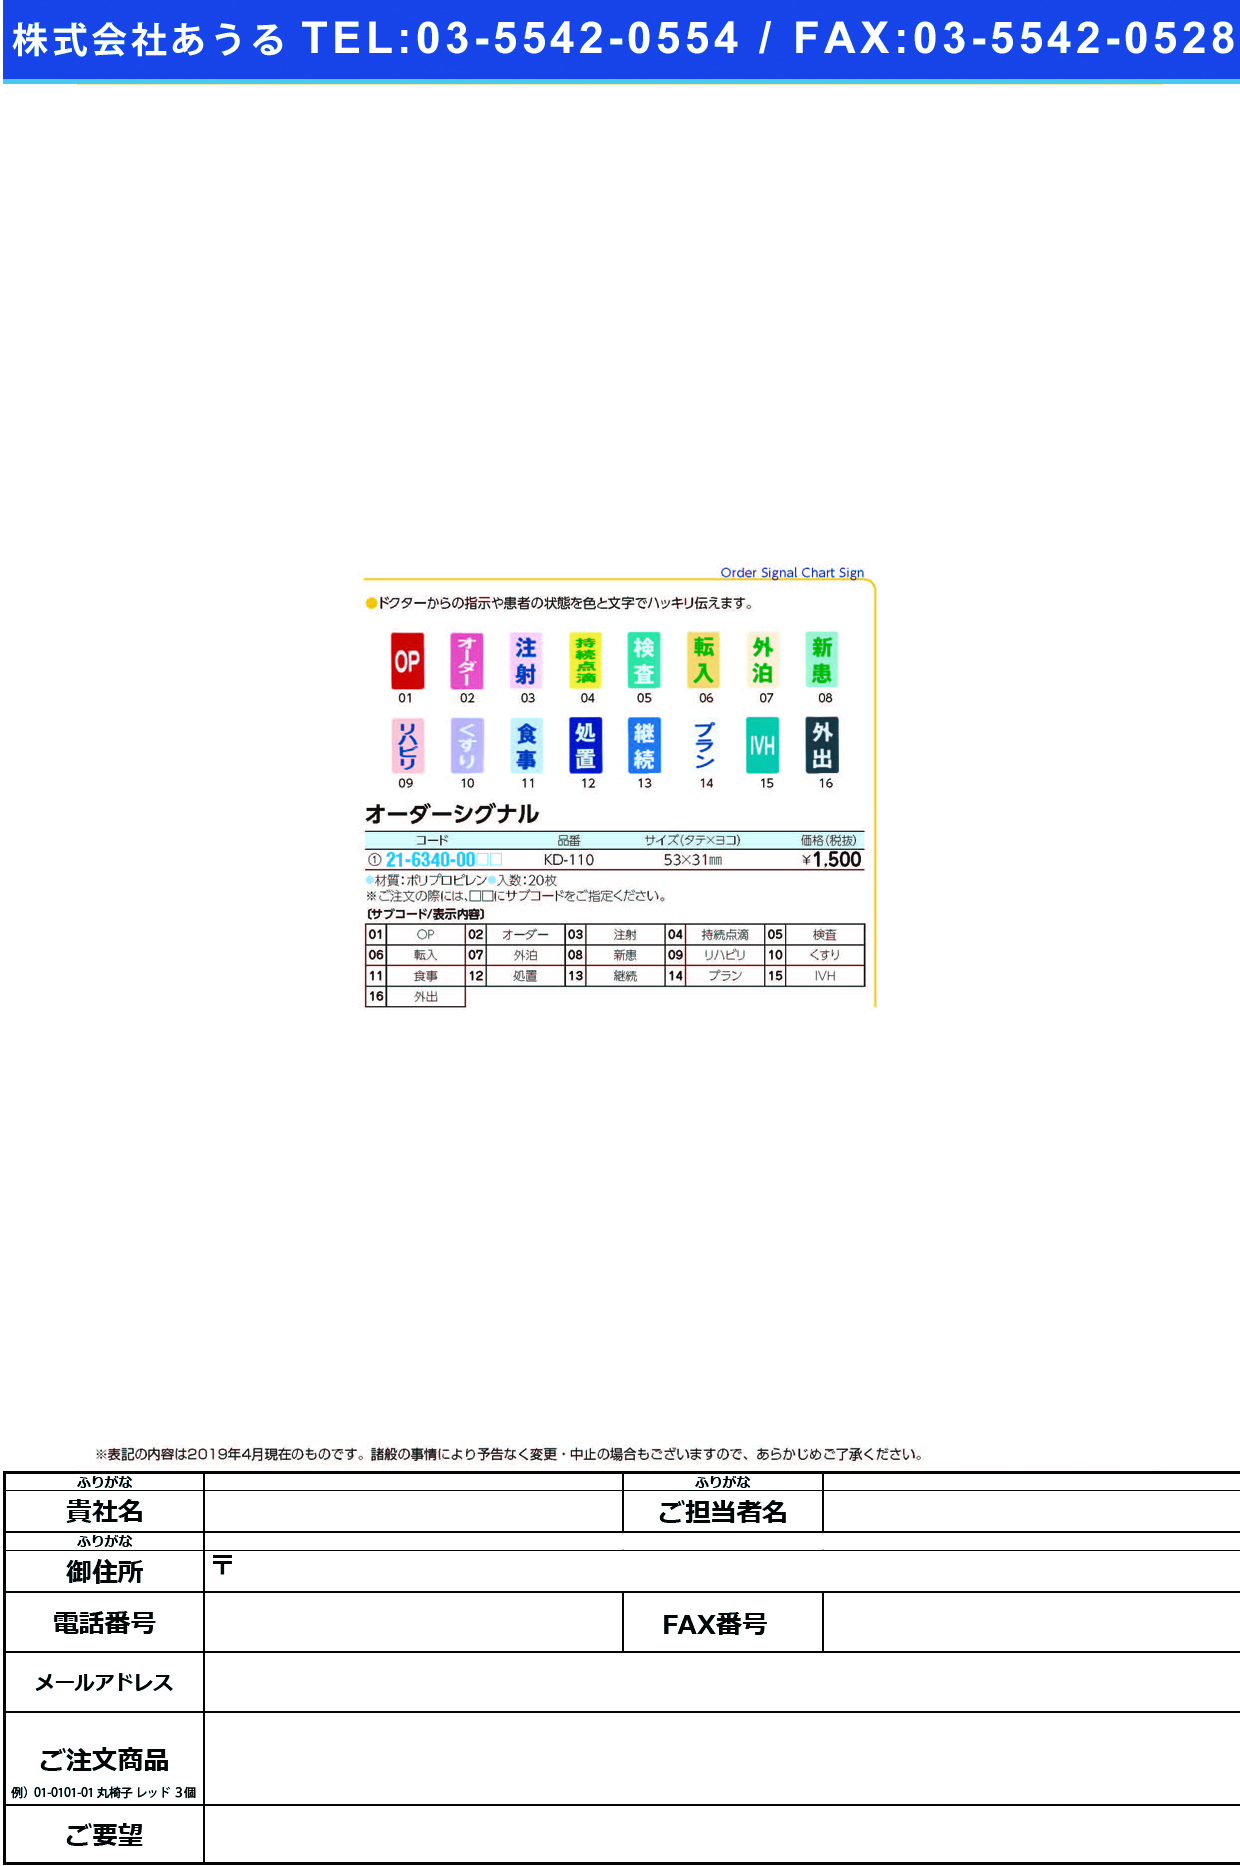 (21-6340-00)オーダーシグナル KD-110(20ﾏｲｲﾘ) ｵｰﾀﾞｰｼｸﾞﾅﾙ 検査(ケルン)【1袋単位】【2019年カタログ商品】